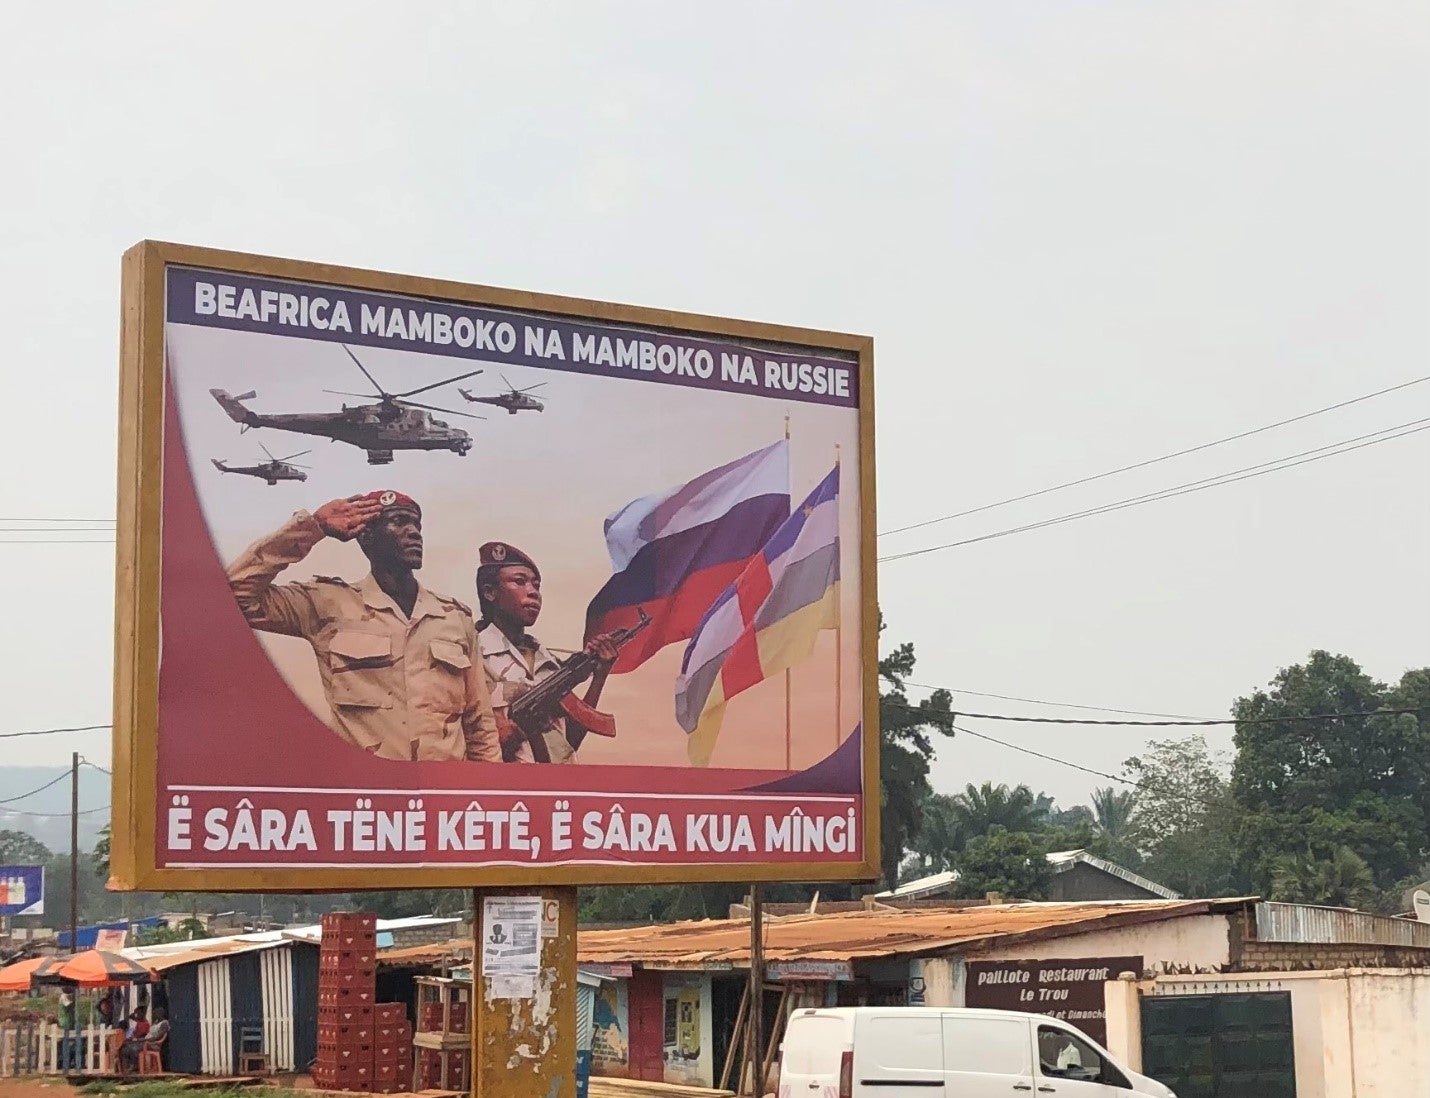 Un panneau vu à Bangui, capitale de la République centrafricaine, vantant la coopération entre ce pays et la Russie. Le texte, en langue sango, proclame : « La République centrafricaine main dans la main avec la Russie. Peu de paroles, beaucoup de travail. »  